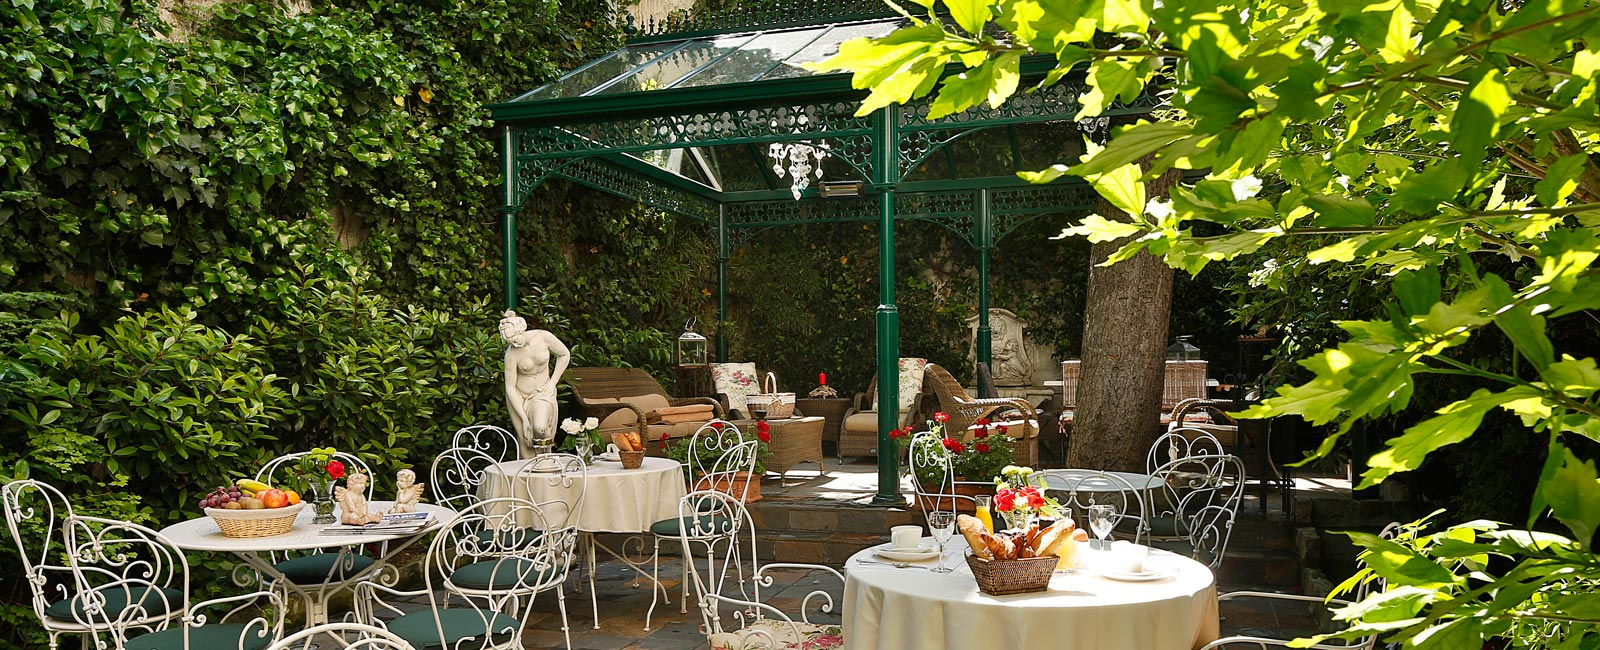 Hôtel Des Marronniers Paris Centre Site Officiel St Germain Des Prés encequiconcerne Salon De Jardin Castorama Près De Paris